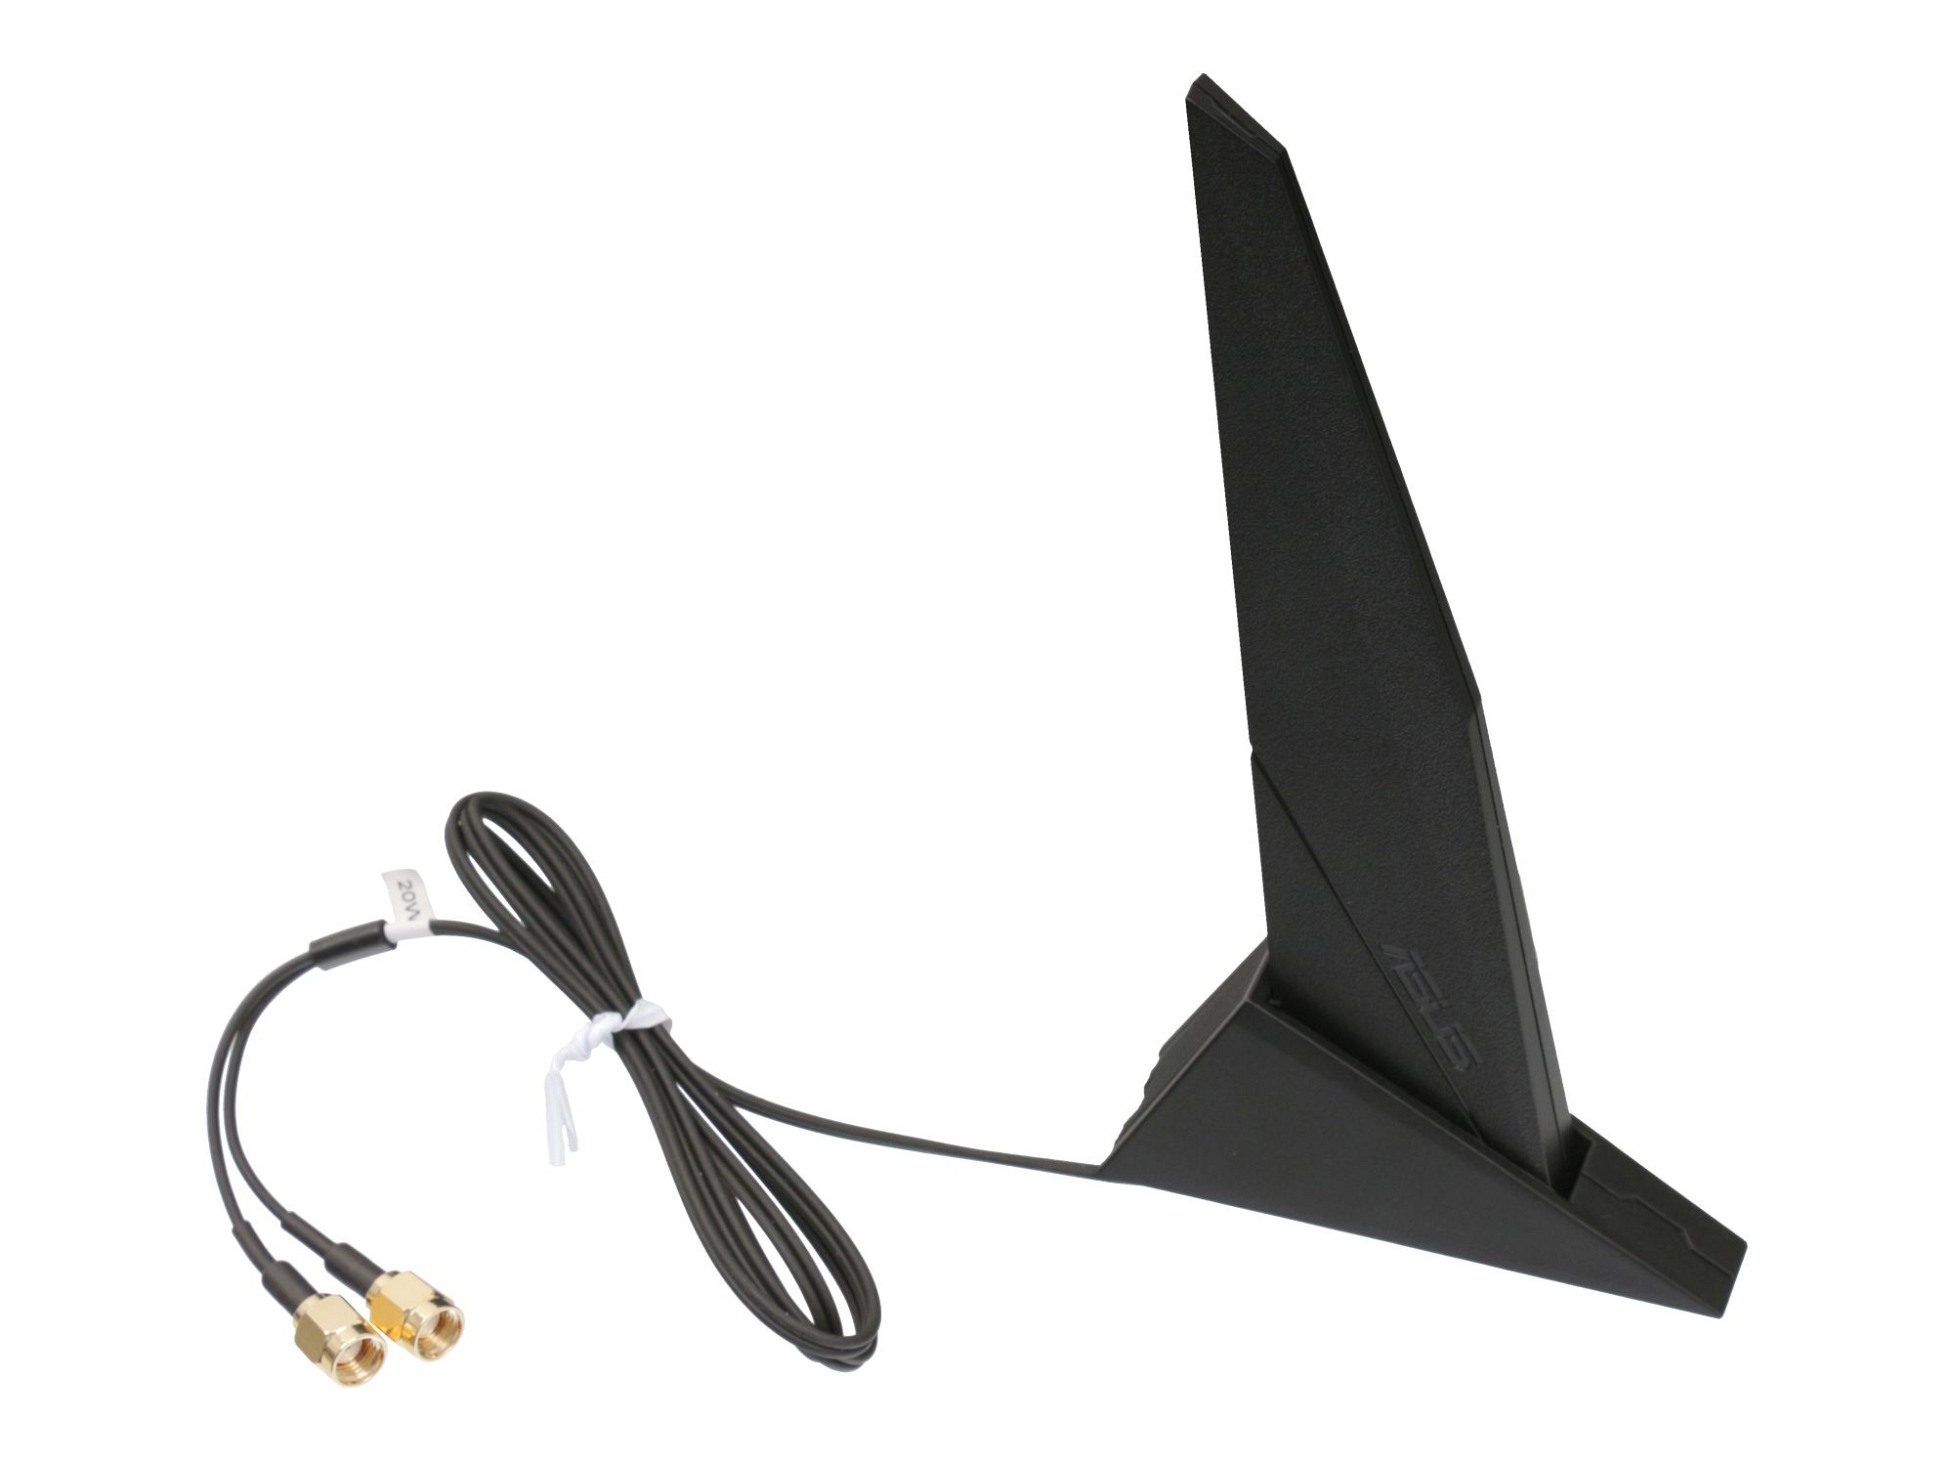 Externe Asus RP-SMA DIPOLE Antenne für Asus ROG Strix H470-I GAMING